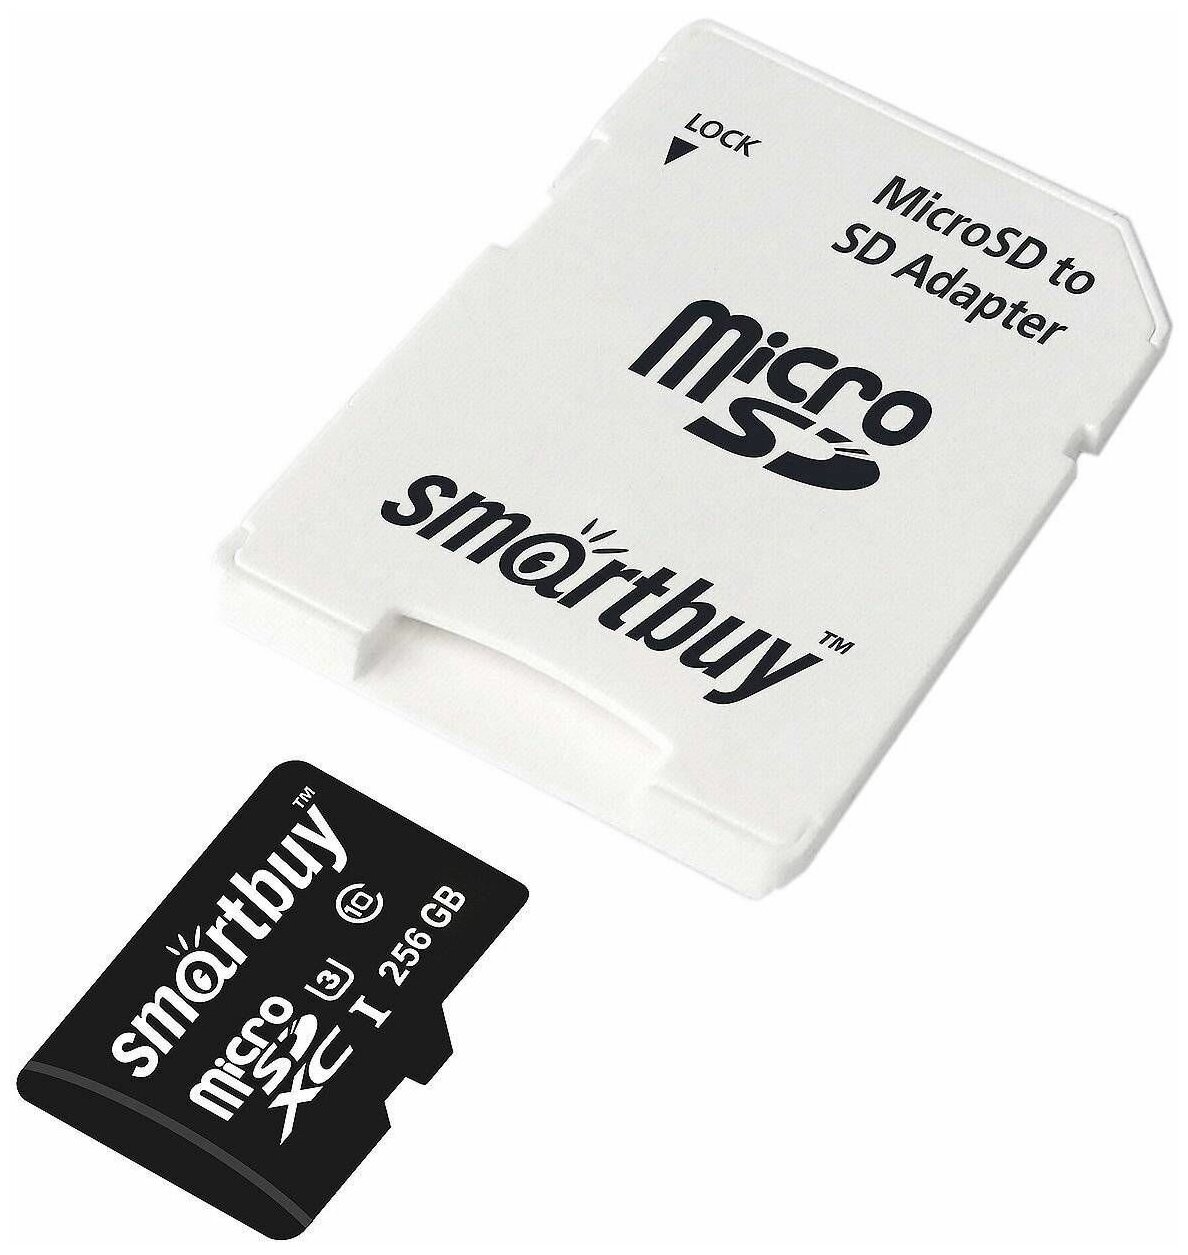 Карта памяти SmartBuy MicroSDXC 256GB UHS-1, Class 10, скорость чтения 90Мб/сек (с адаптером SD)